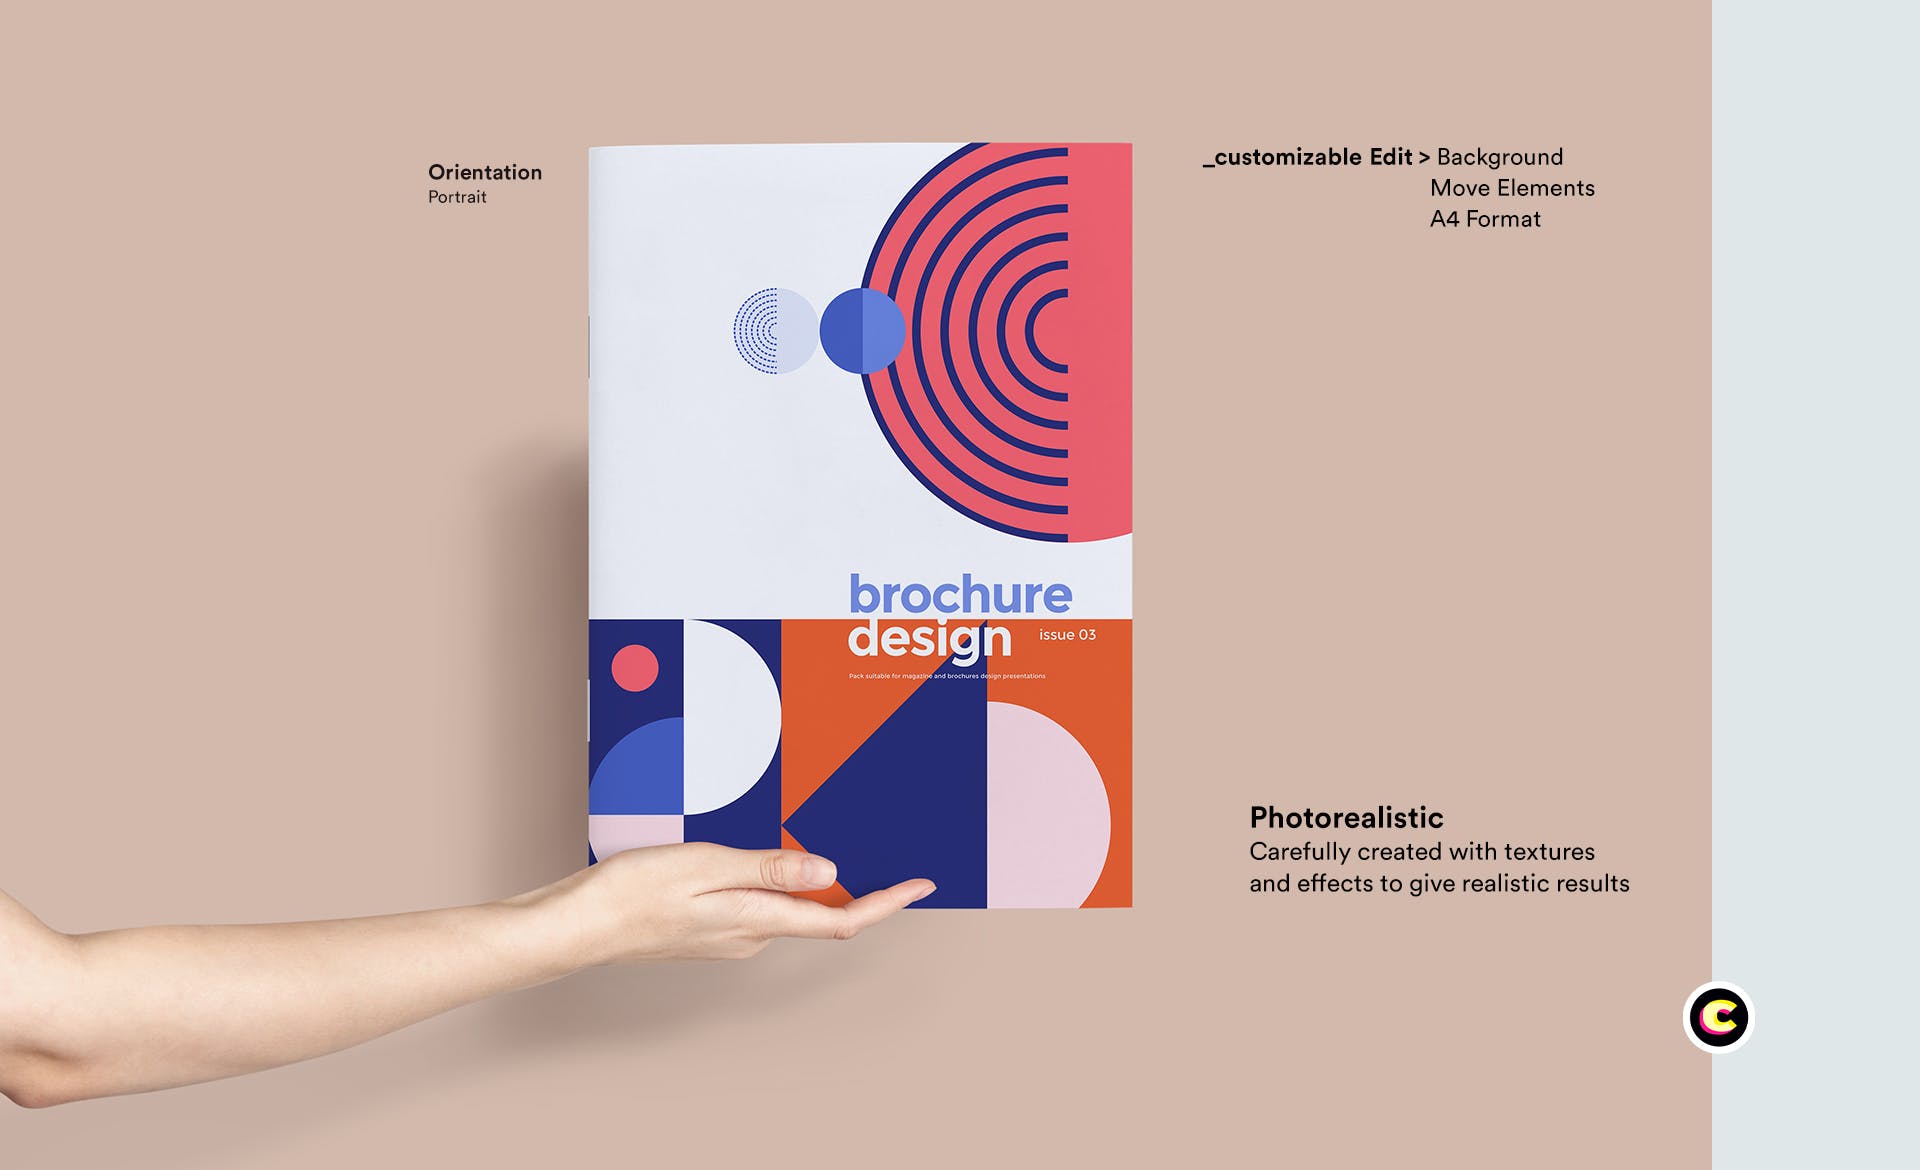 企业品牌画册/宣传册封面设计效果图样机素材中国精选 Brochure Mockup插图(1)